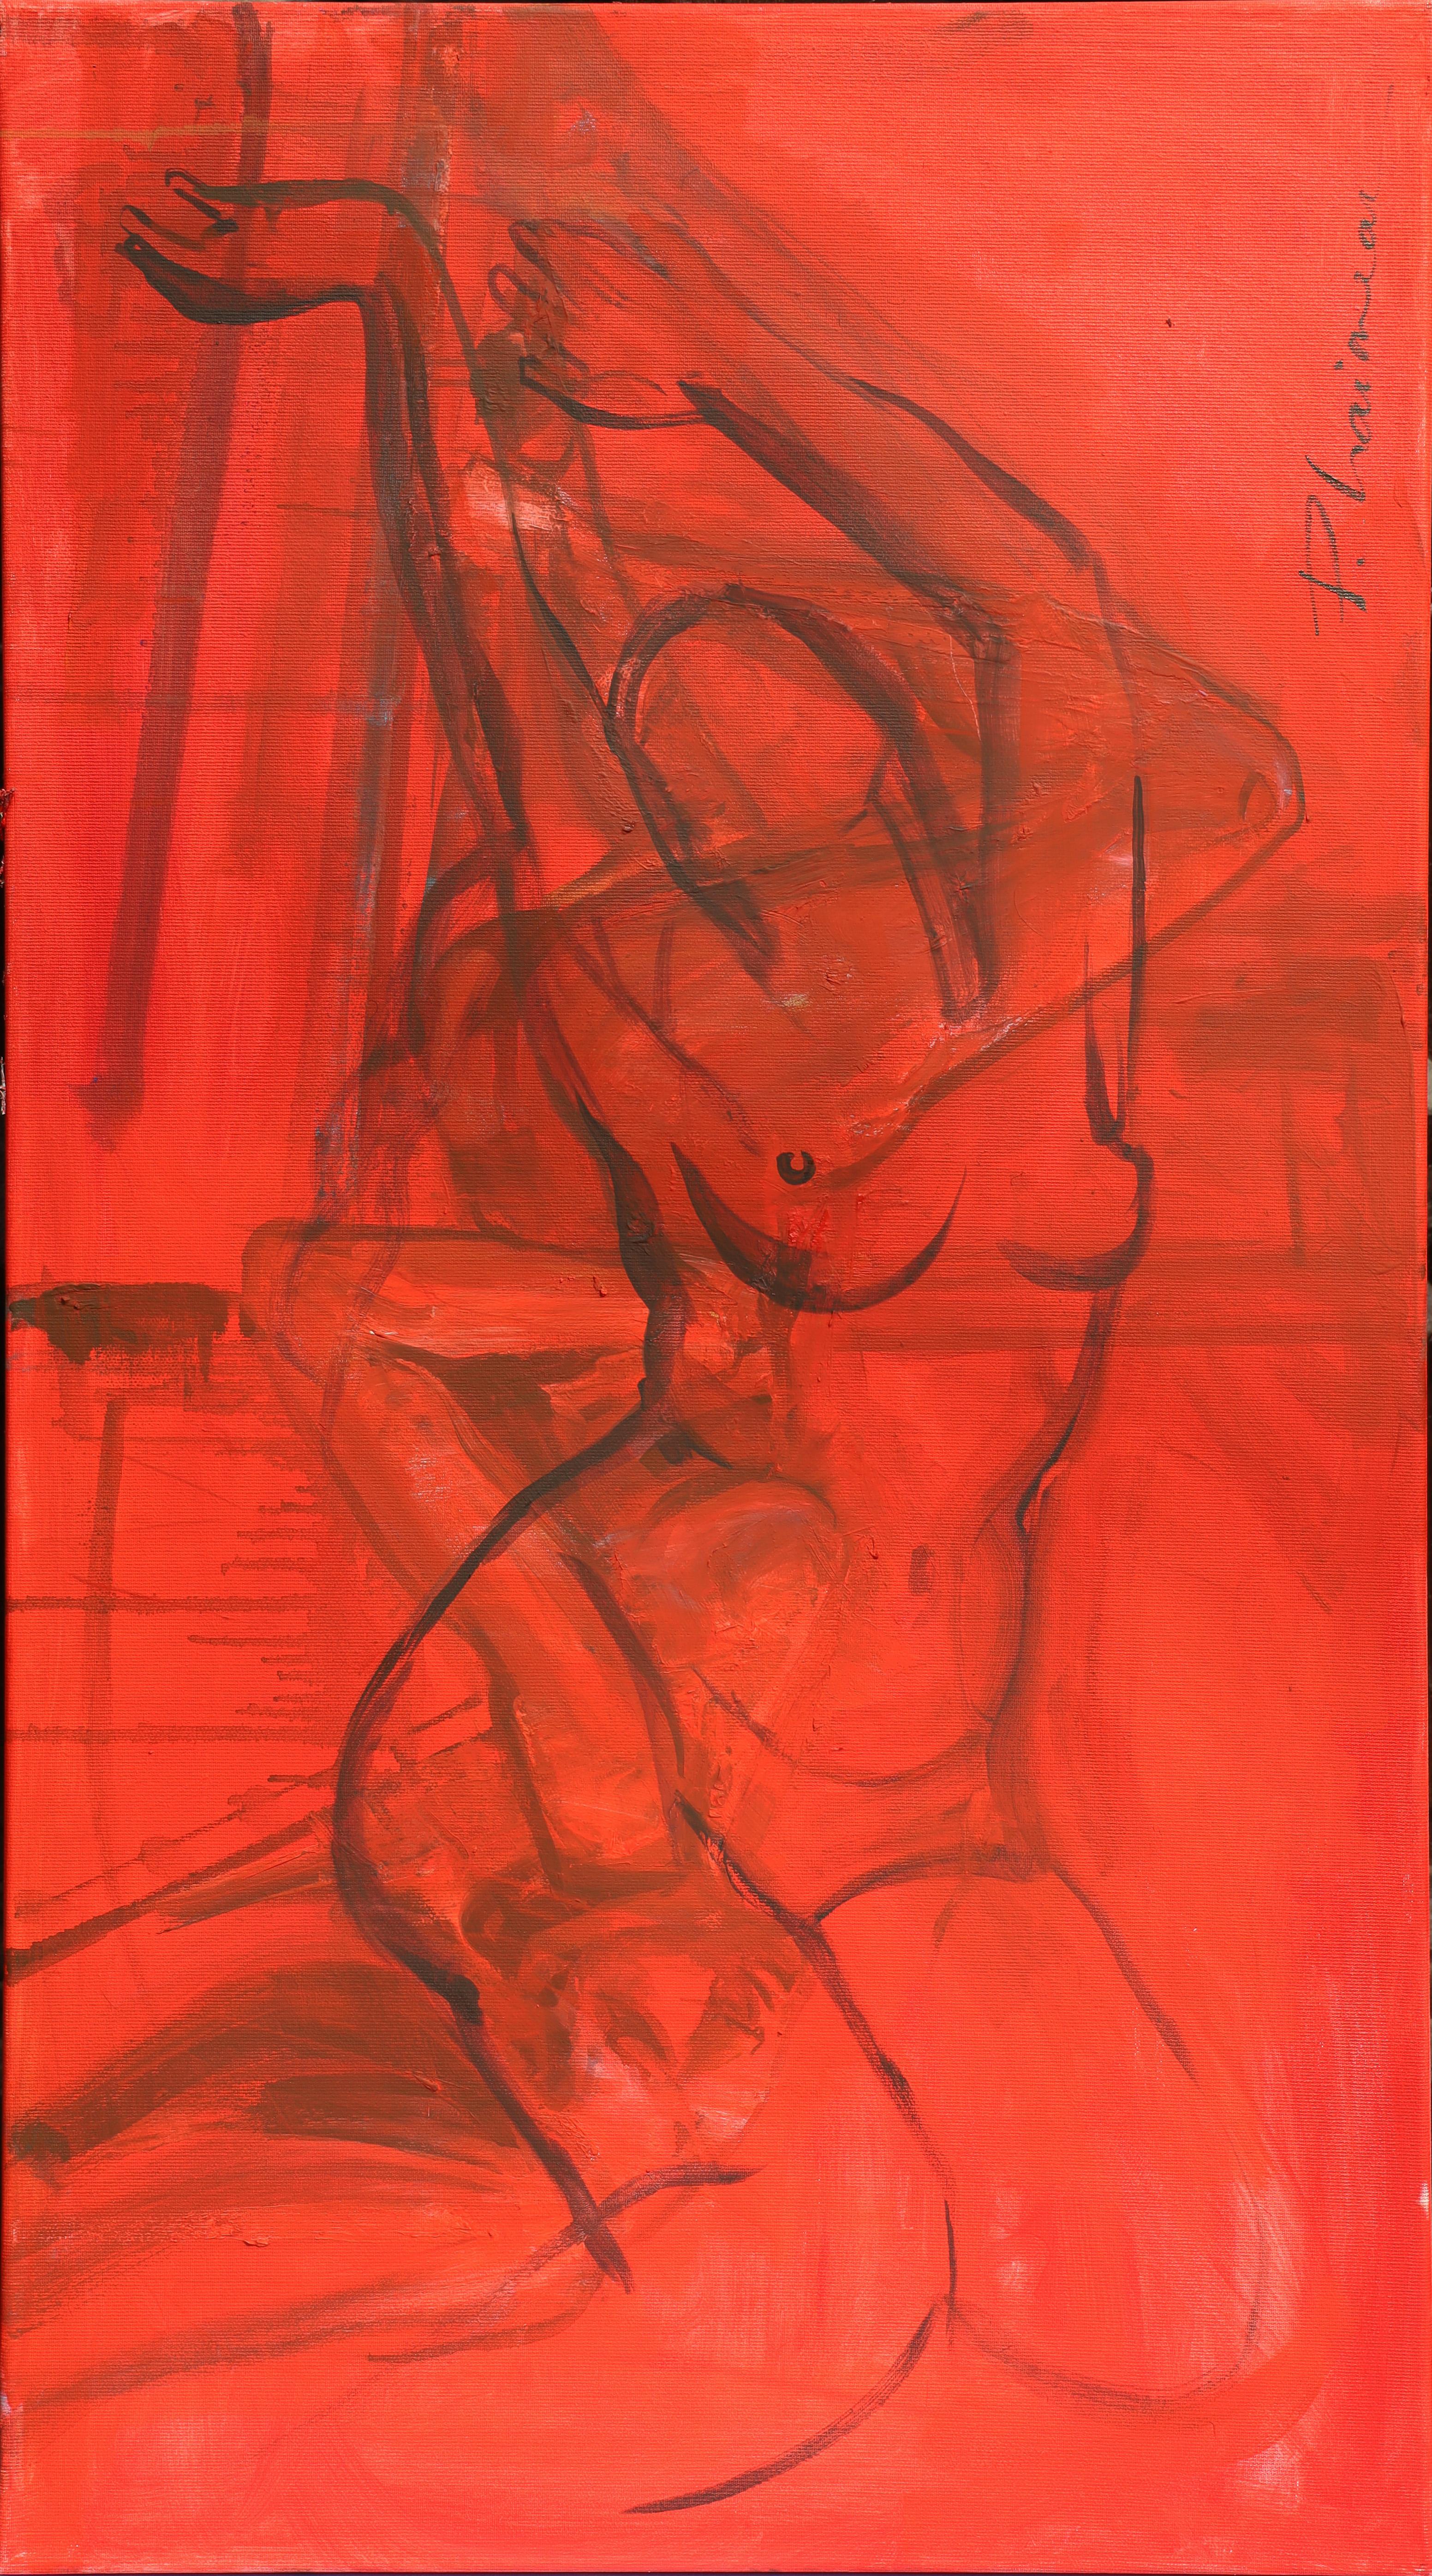 Echoes 2 - Gemälde Paula Craioveanu, Öl auf Leinwand